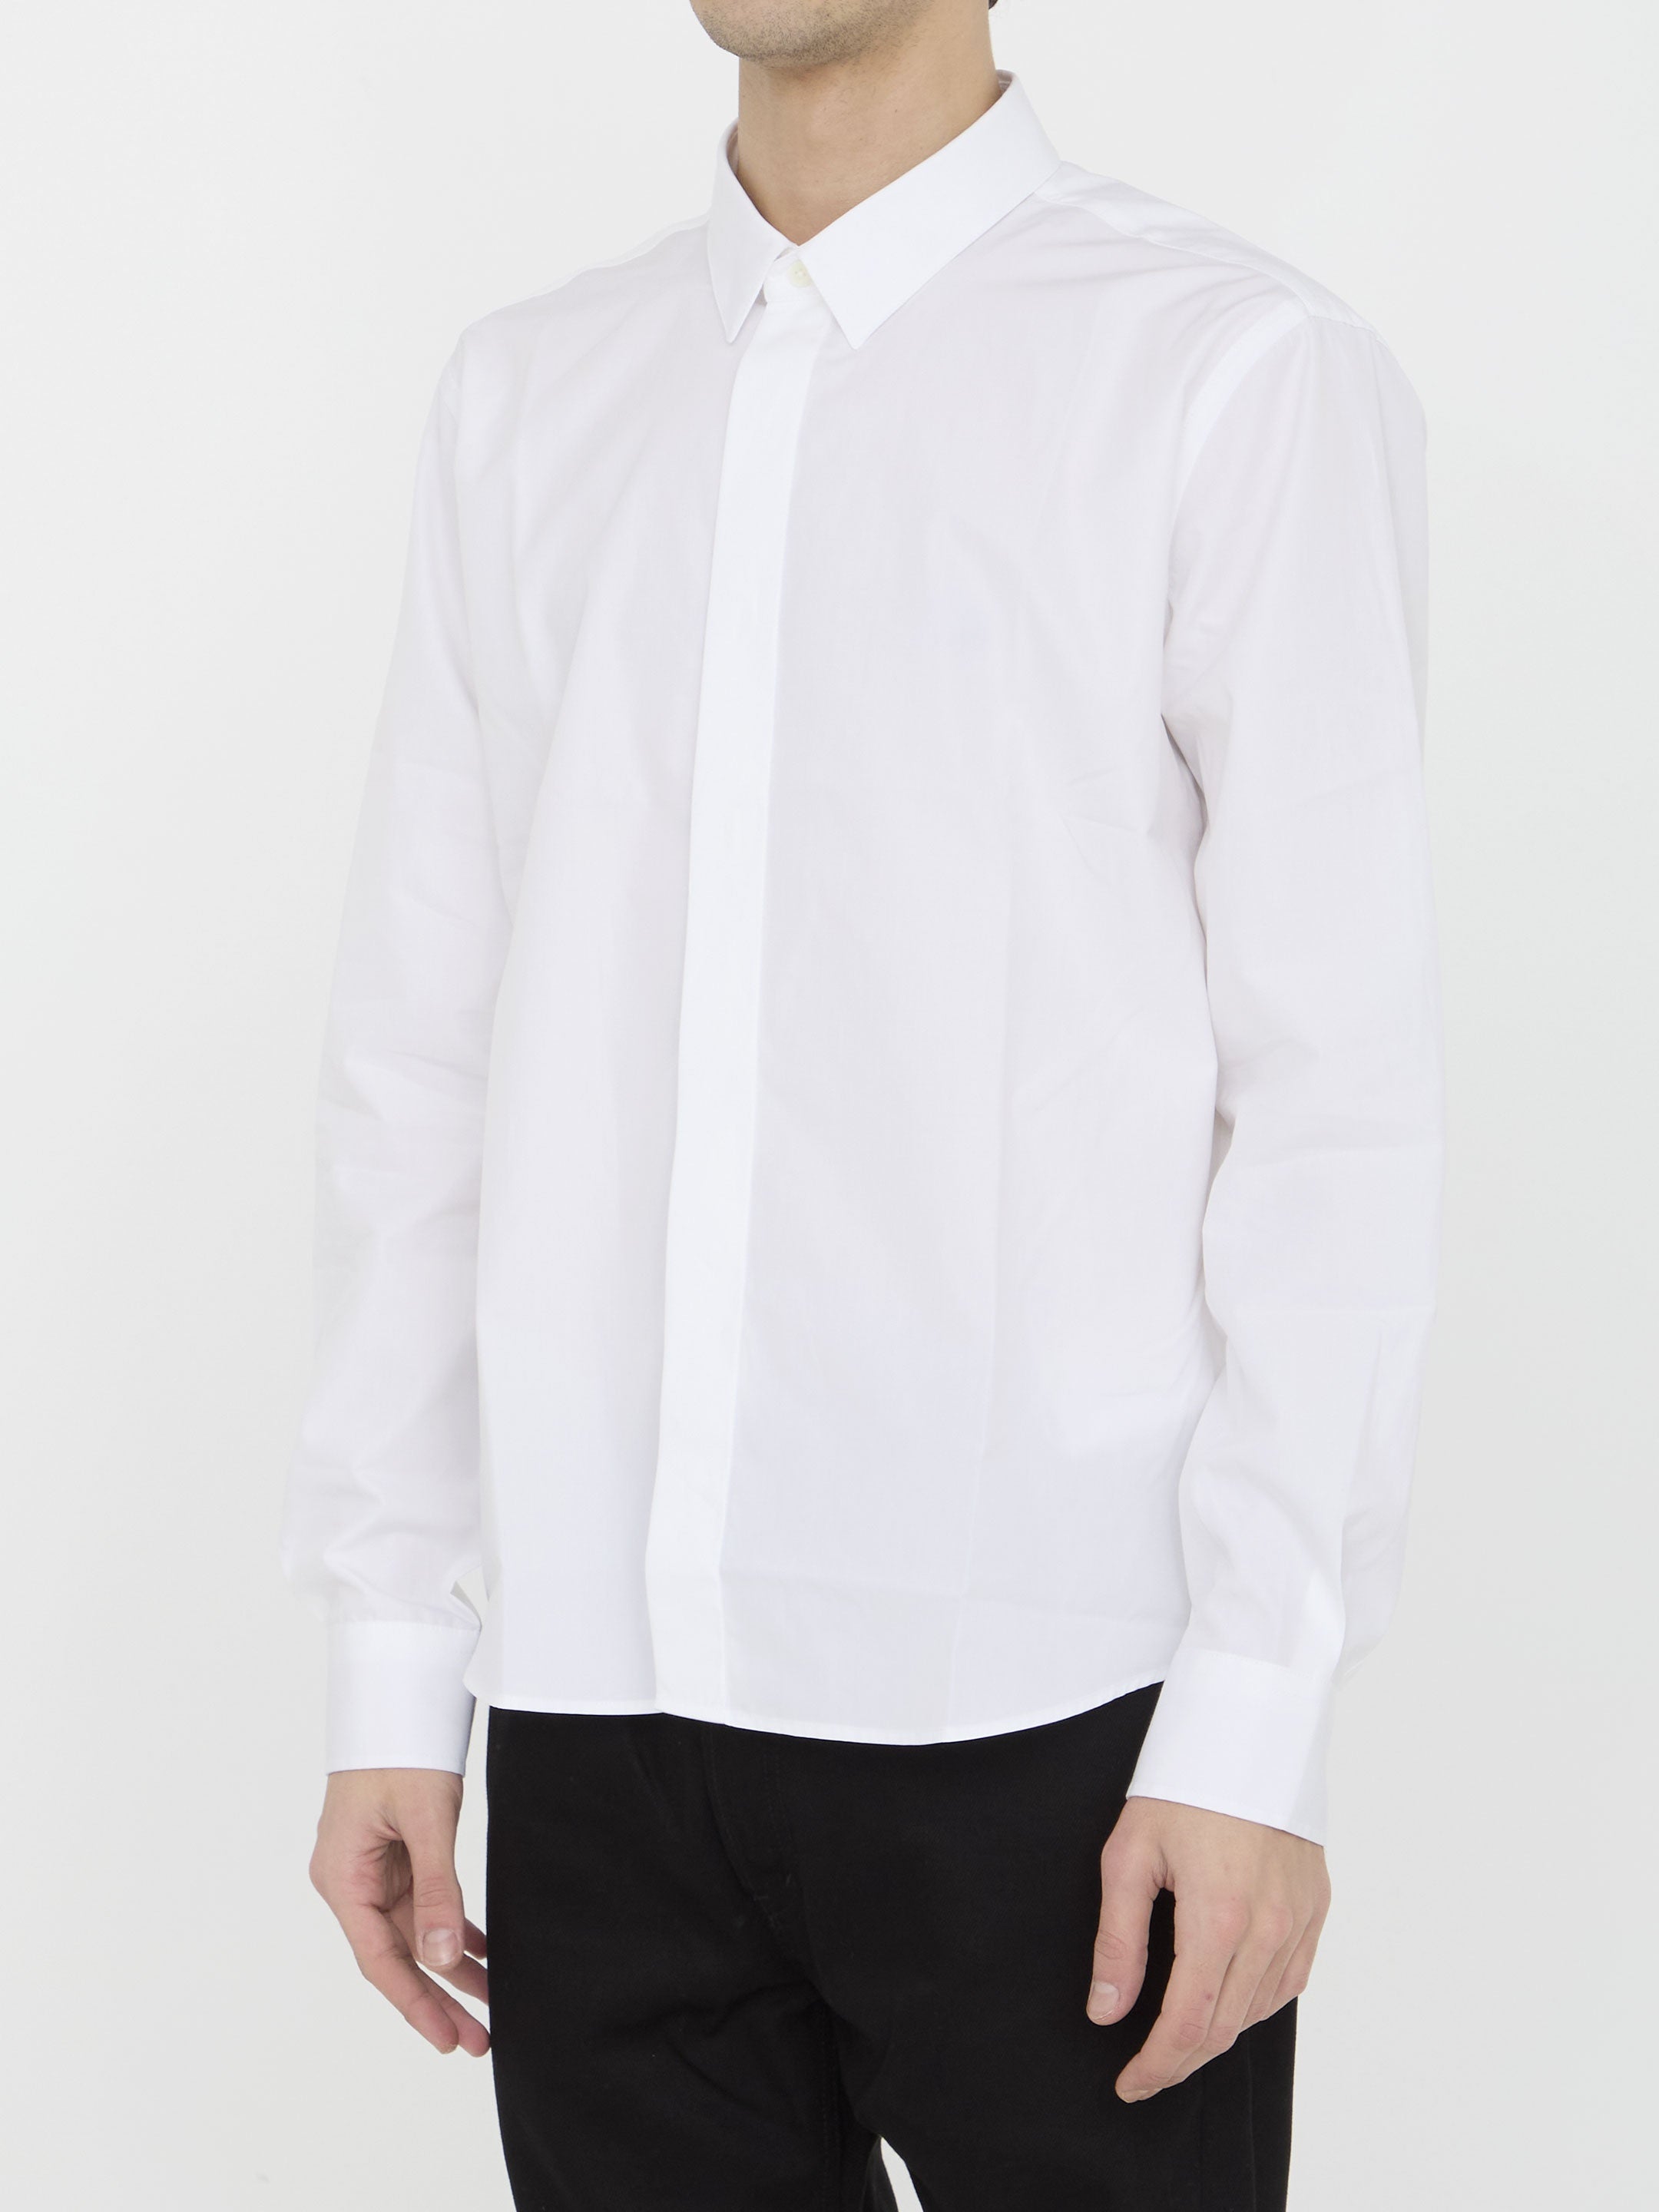 AMI-PARIS-OUTLET-SALE-Cotton-shirt-Shirts-ARCHIVE-COLLECTION-2.jpg